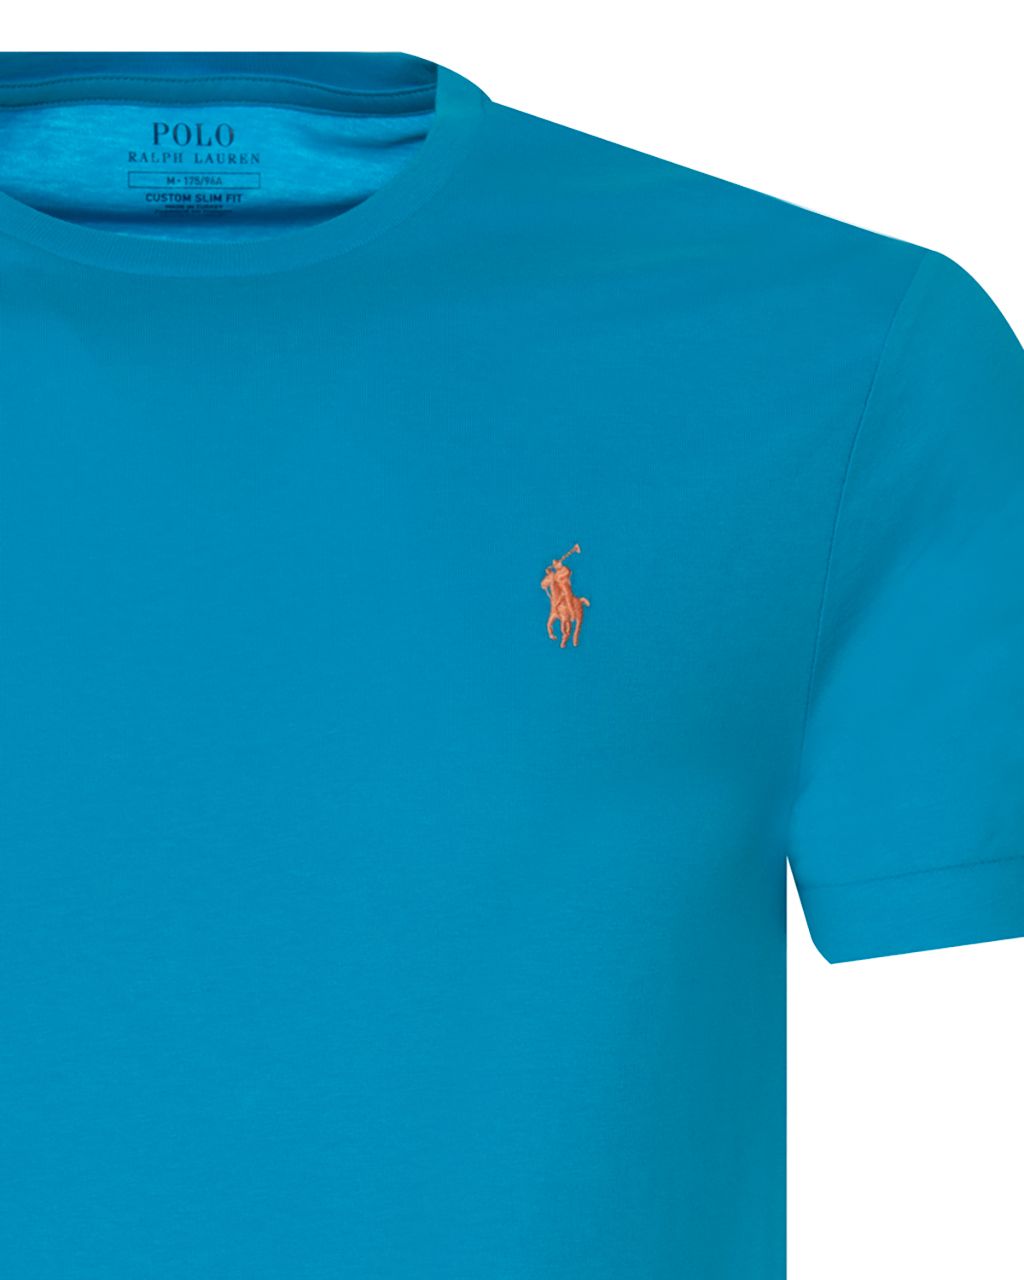 Polo Ralph Lauren T-shirt KM Blauw 064585-001-L